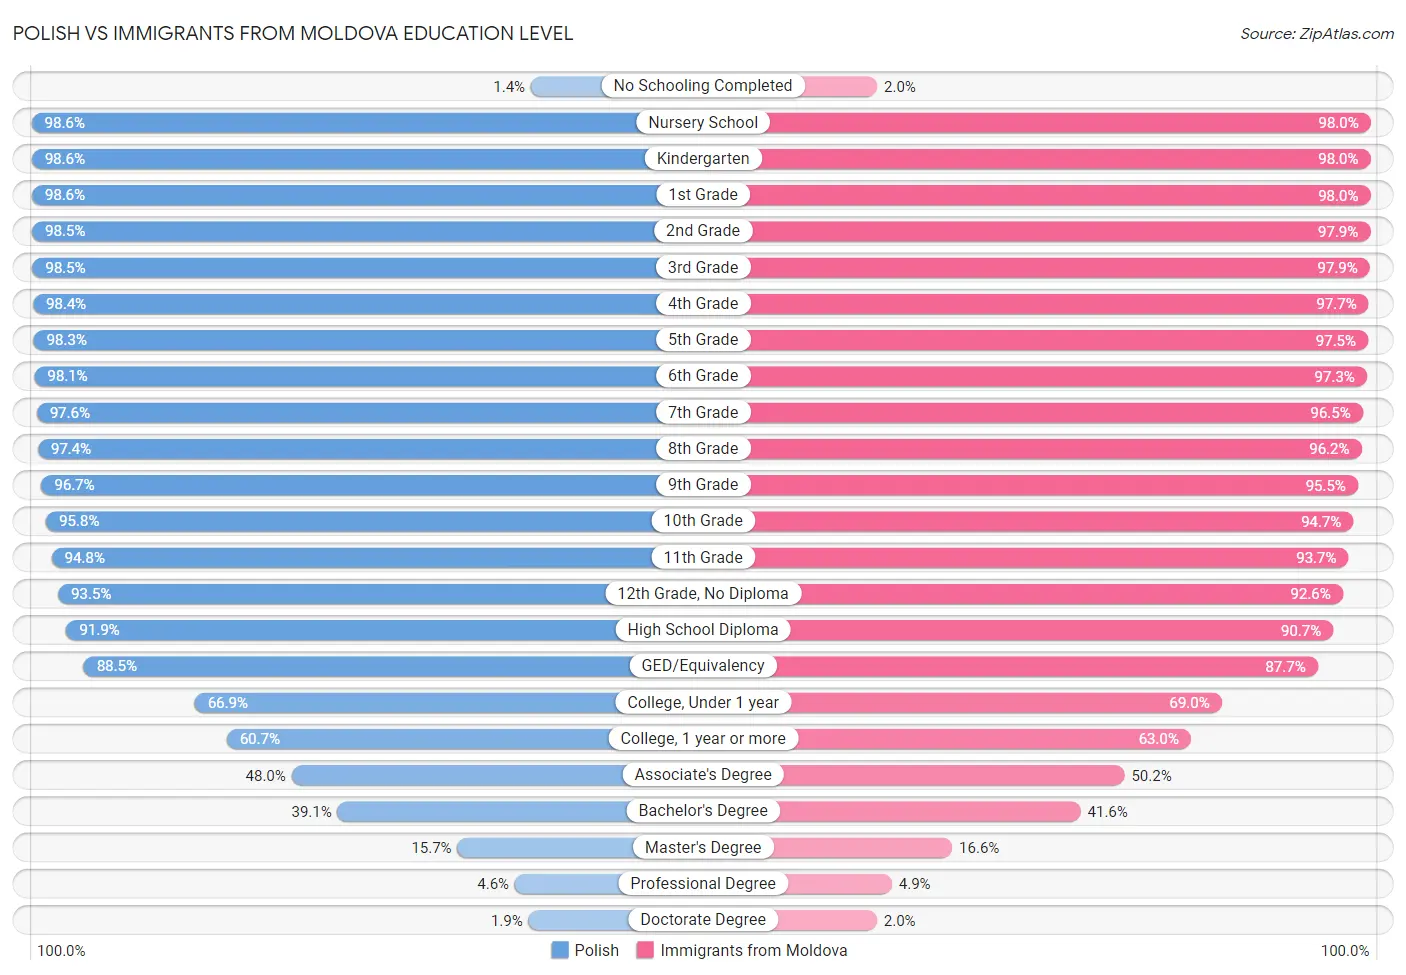 Polish vs Immigrants from Moldova Education Level